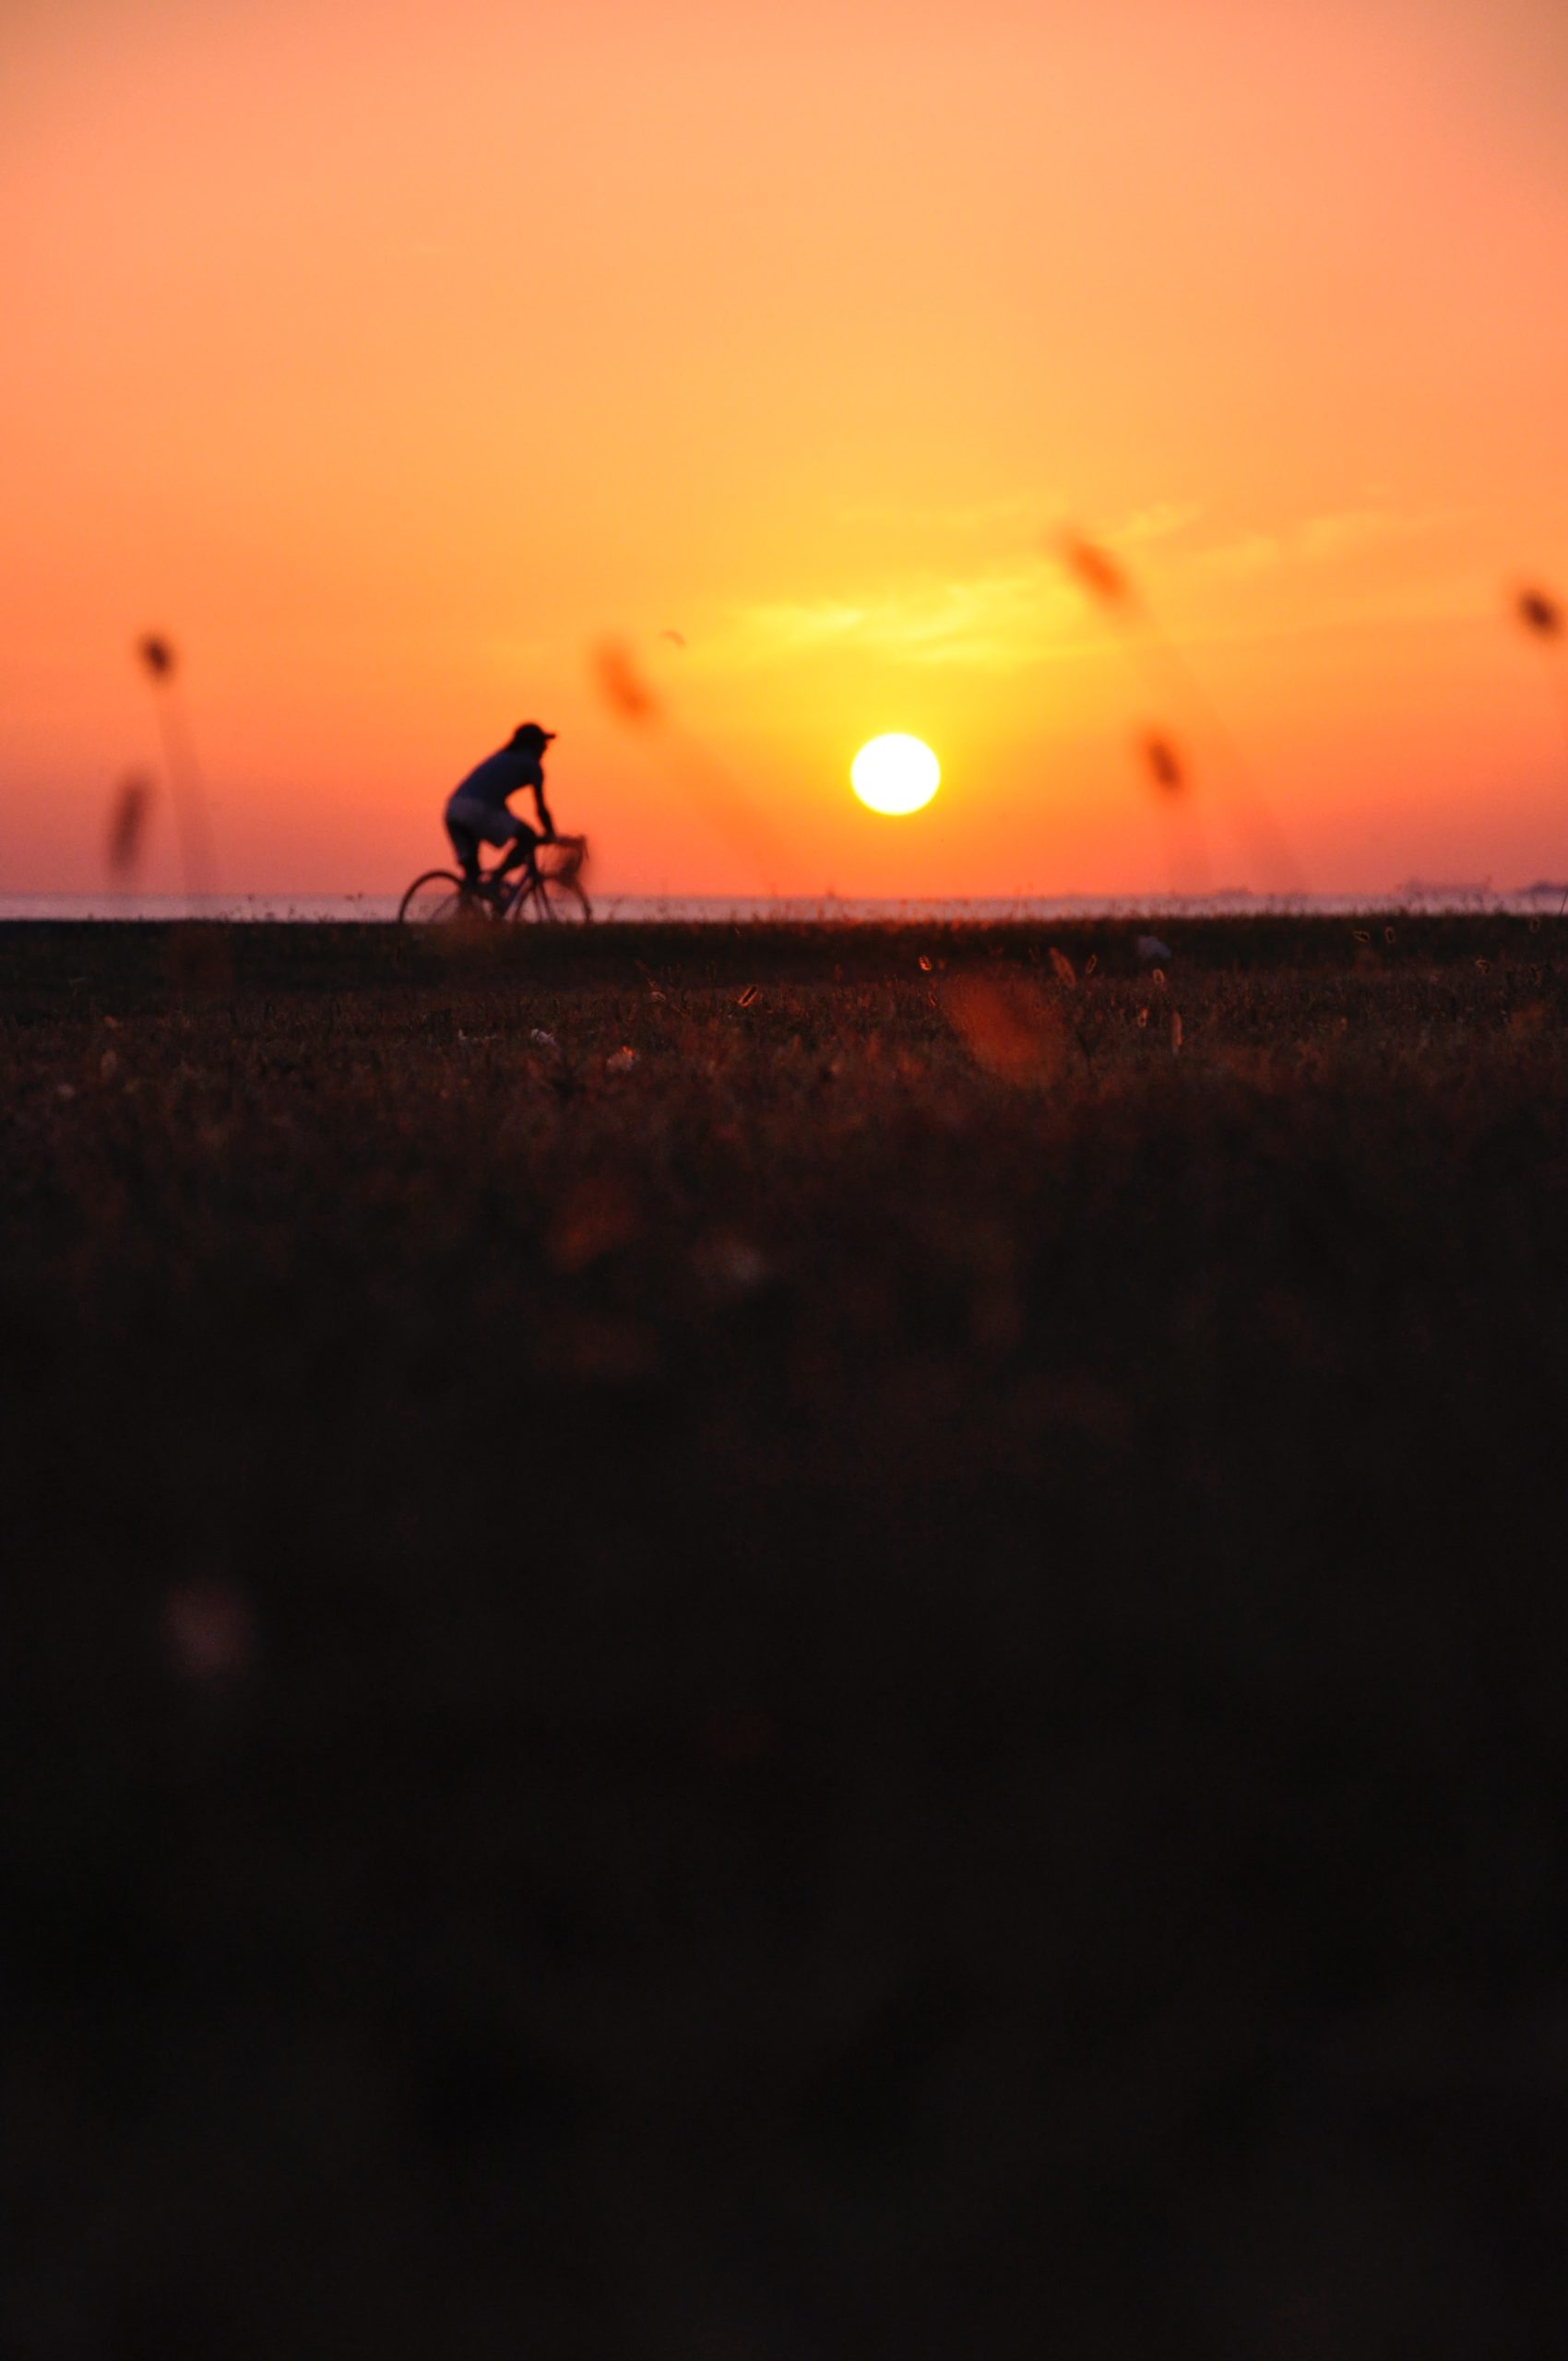 Cycliste sur la route au soleil couchant